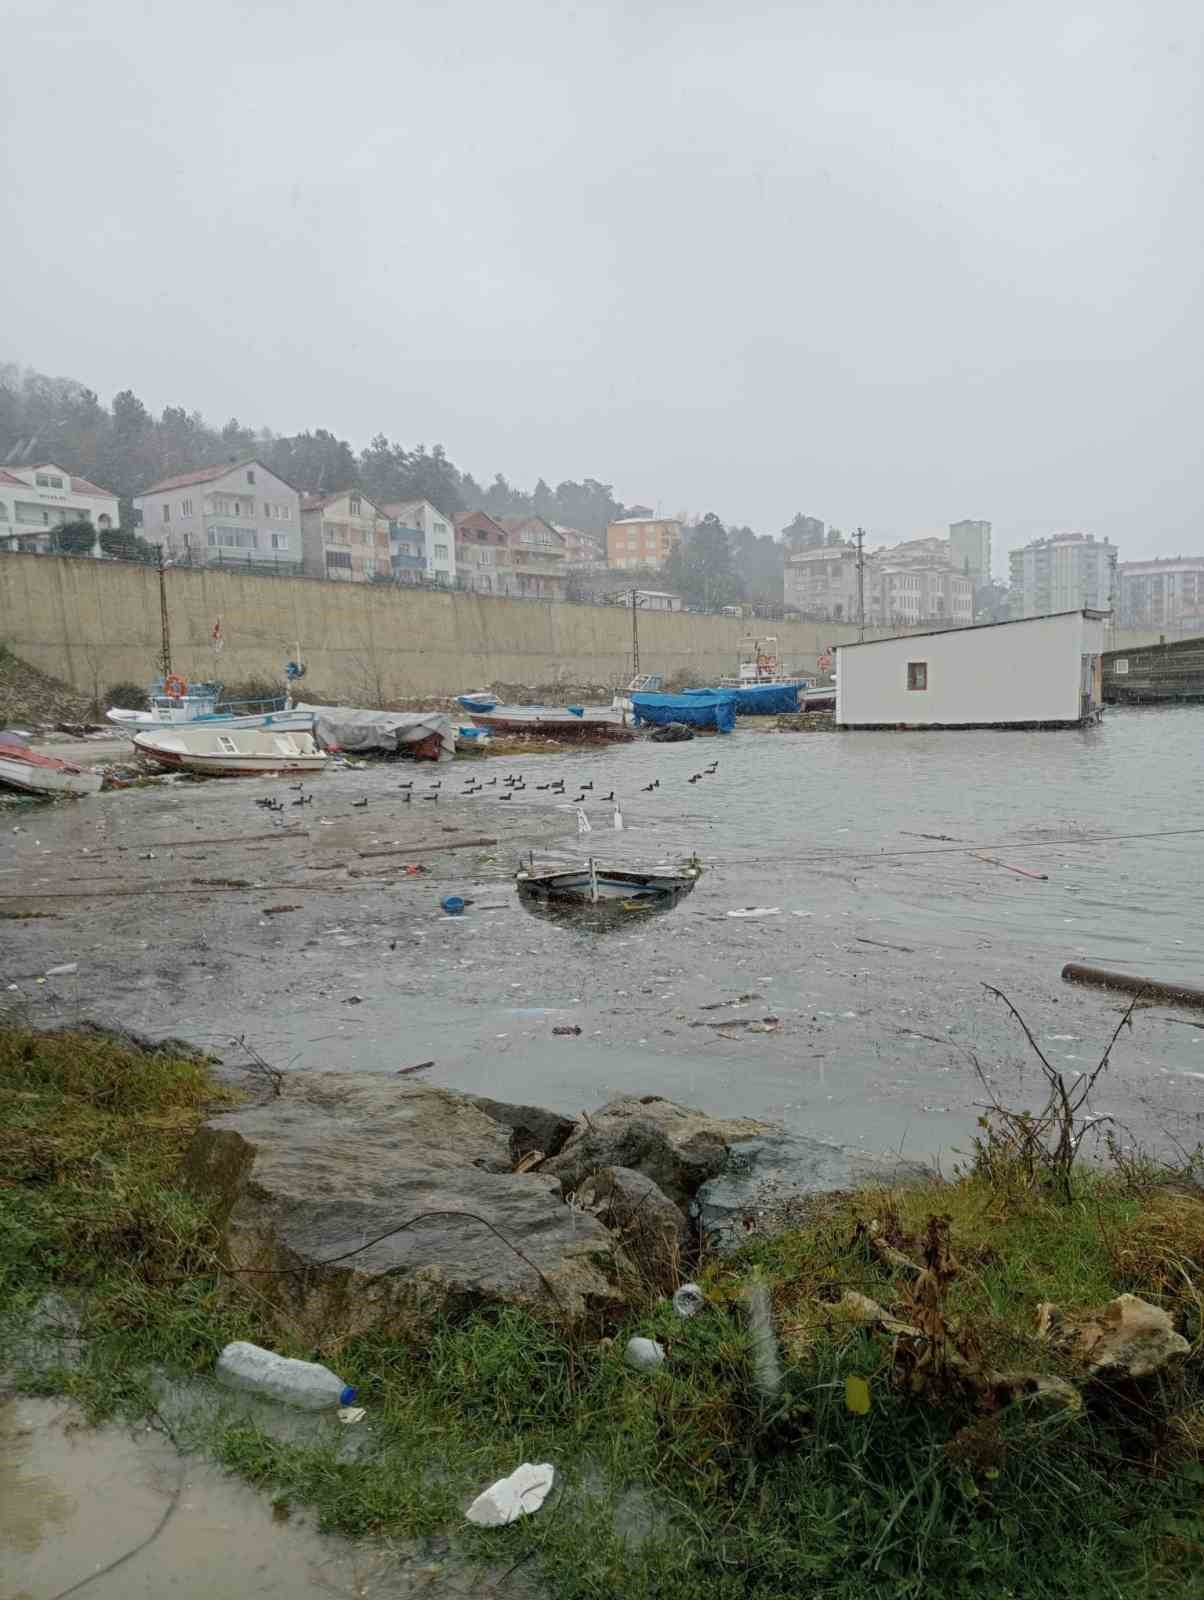 Türkeli’de şiddetli fırtına: 1 kayık battı